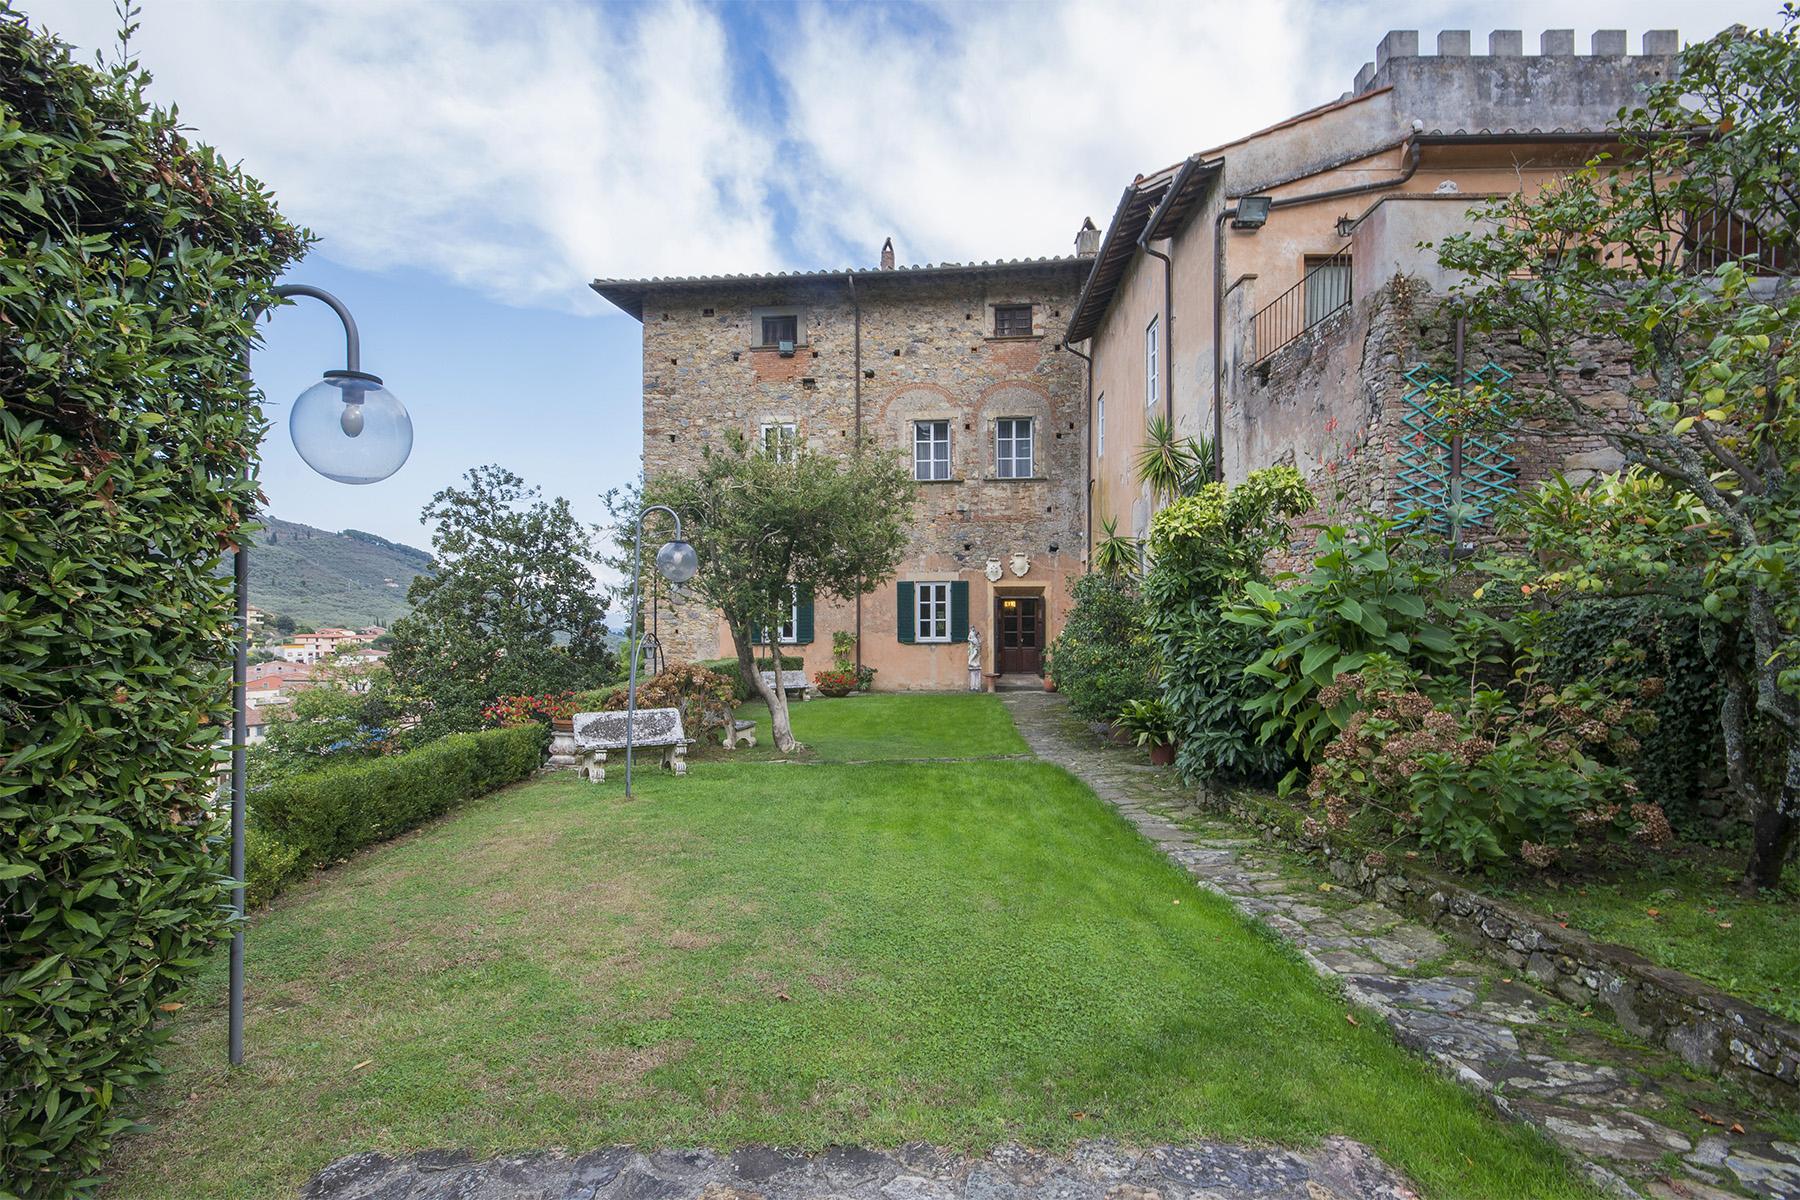 Meravigliosa Villa Medicea sulle colline Pisane - 1